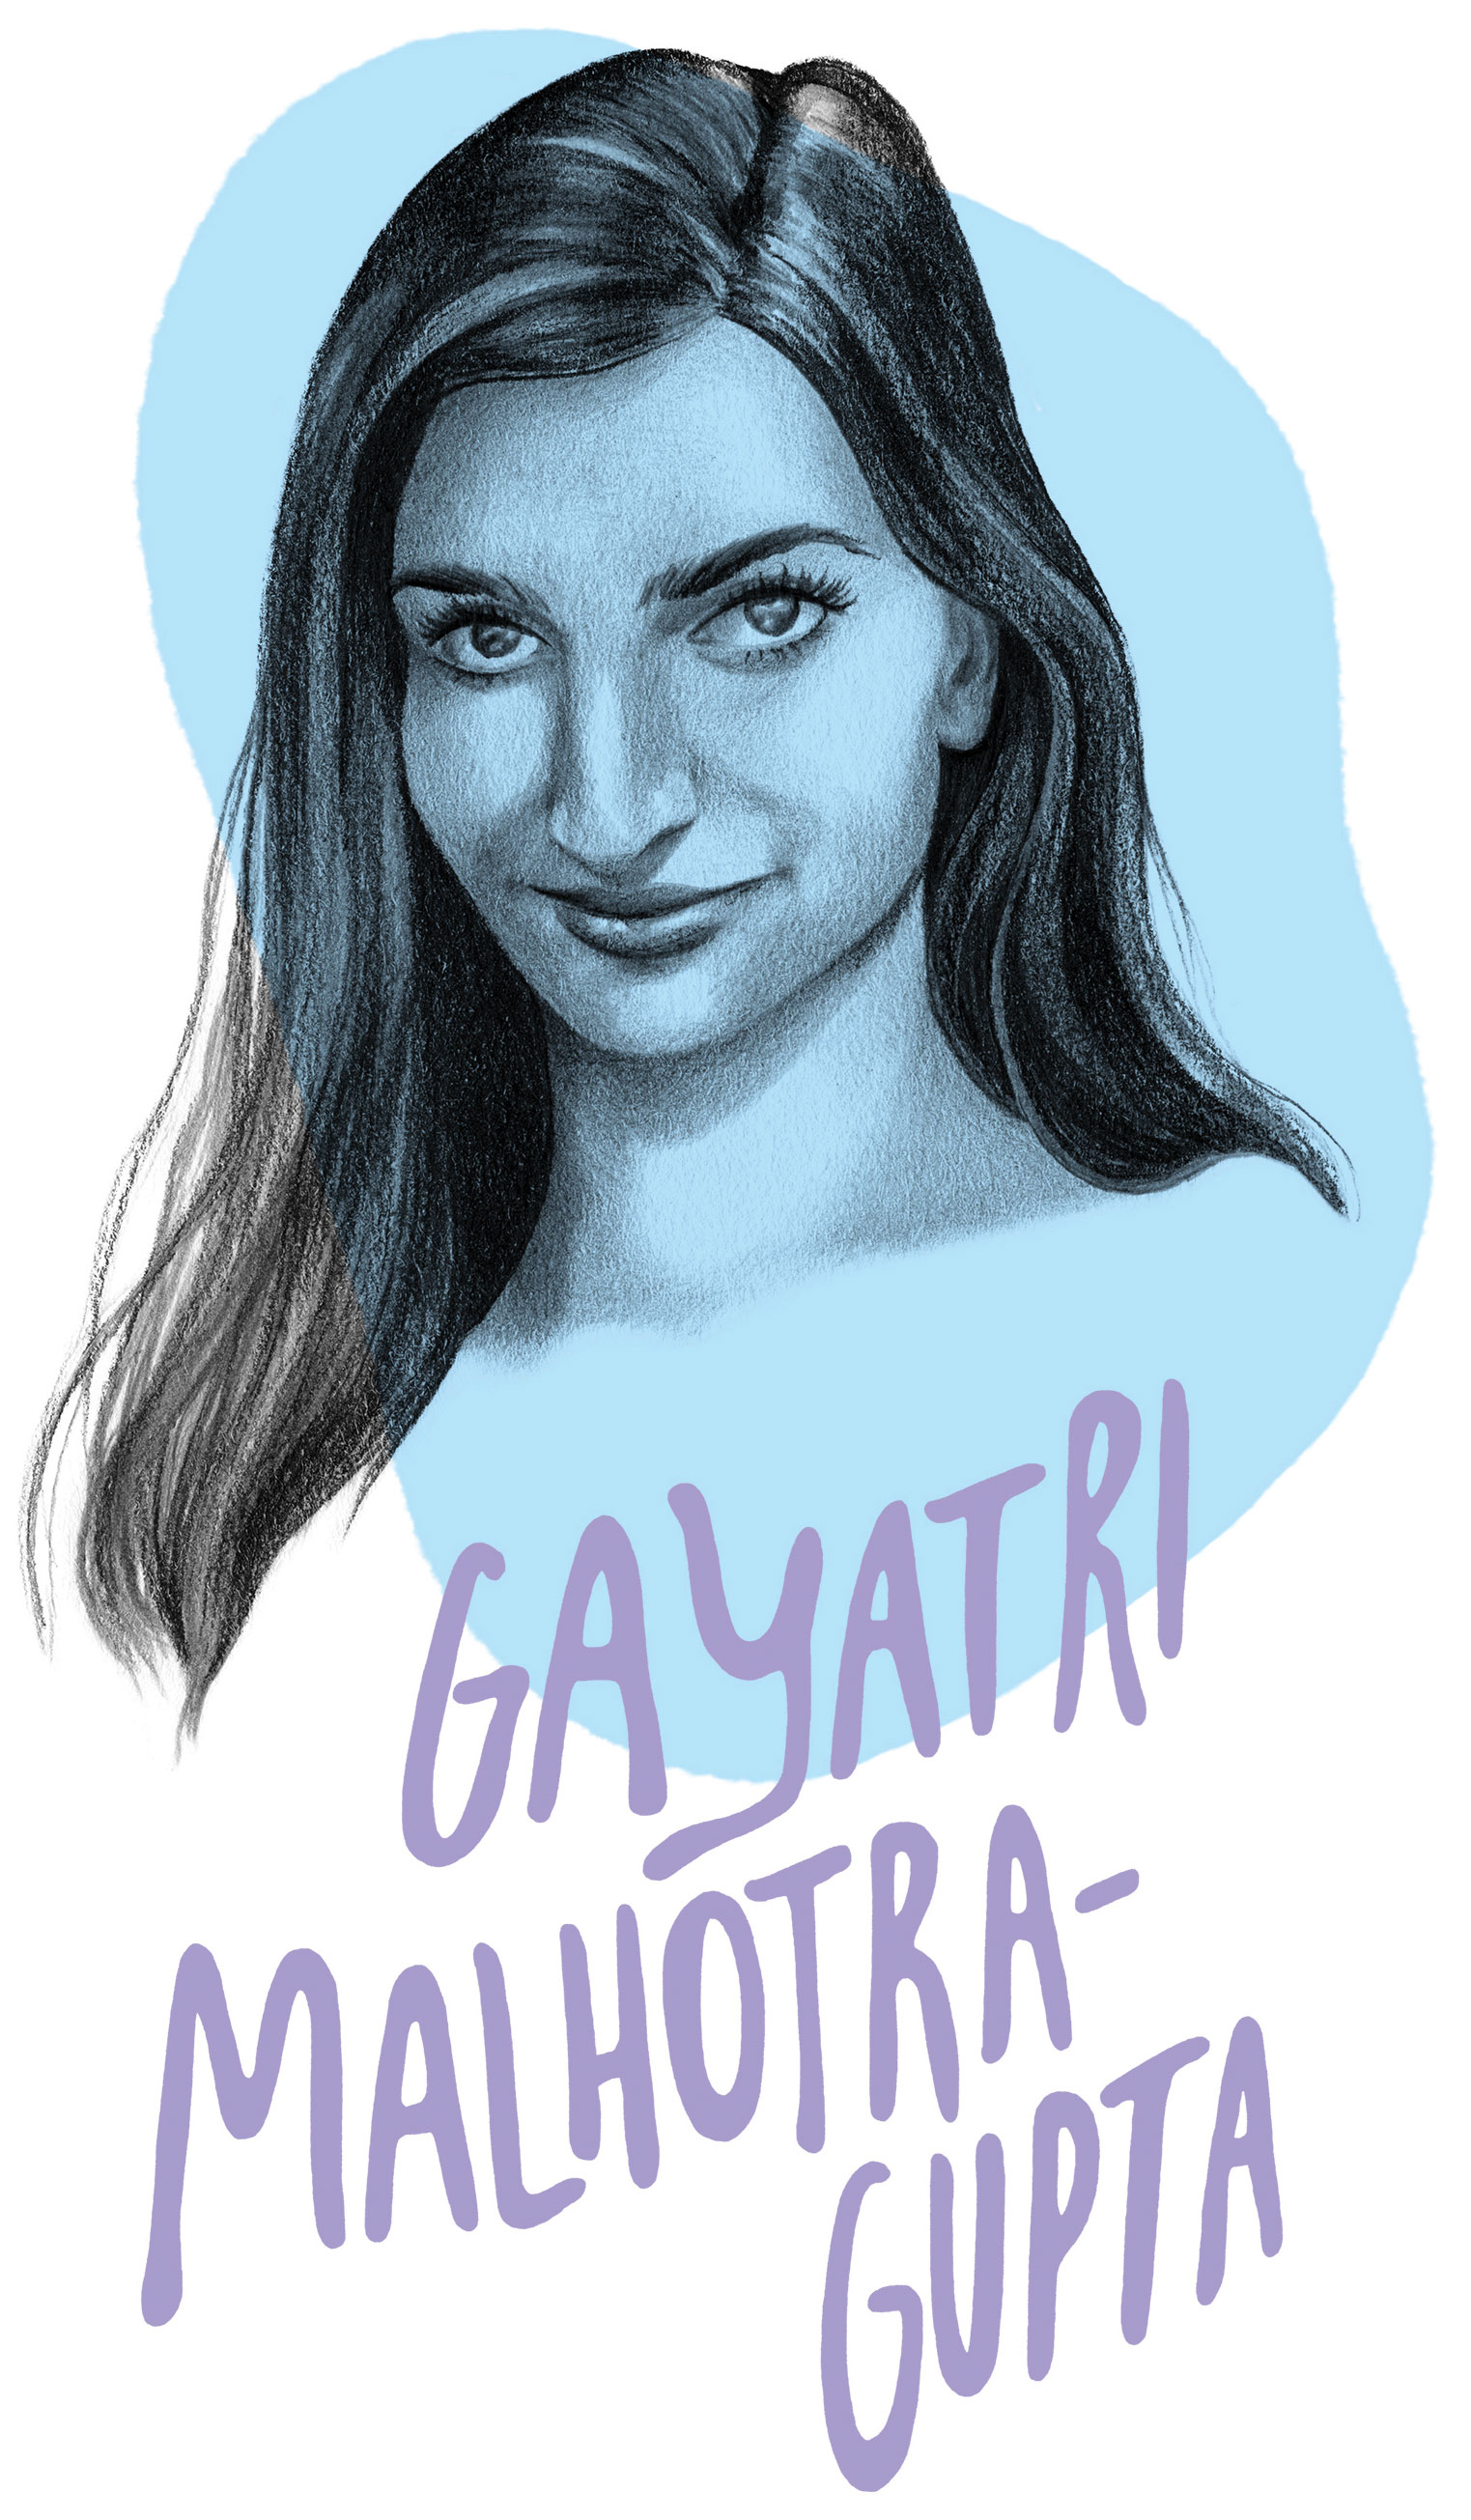 Gayatri Malhotra-Gupta Portrait Illustration